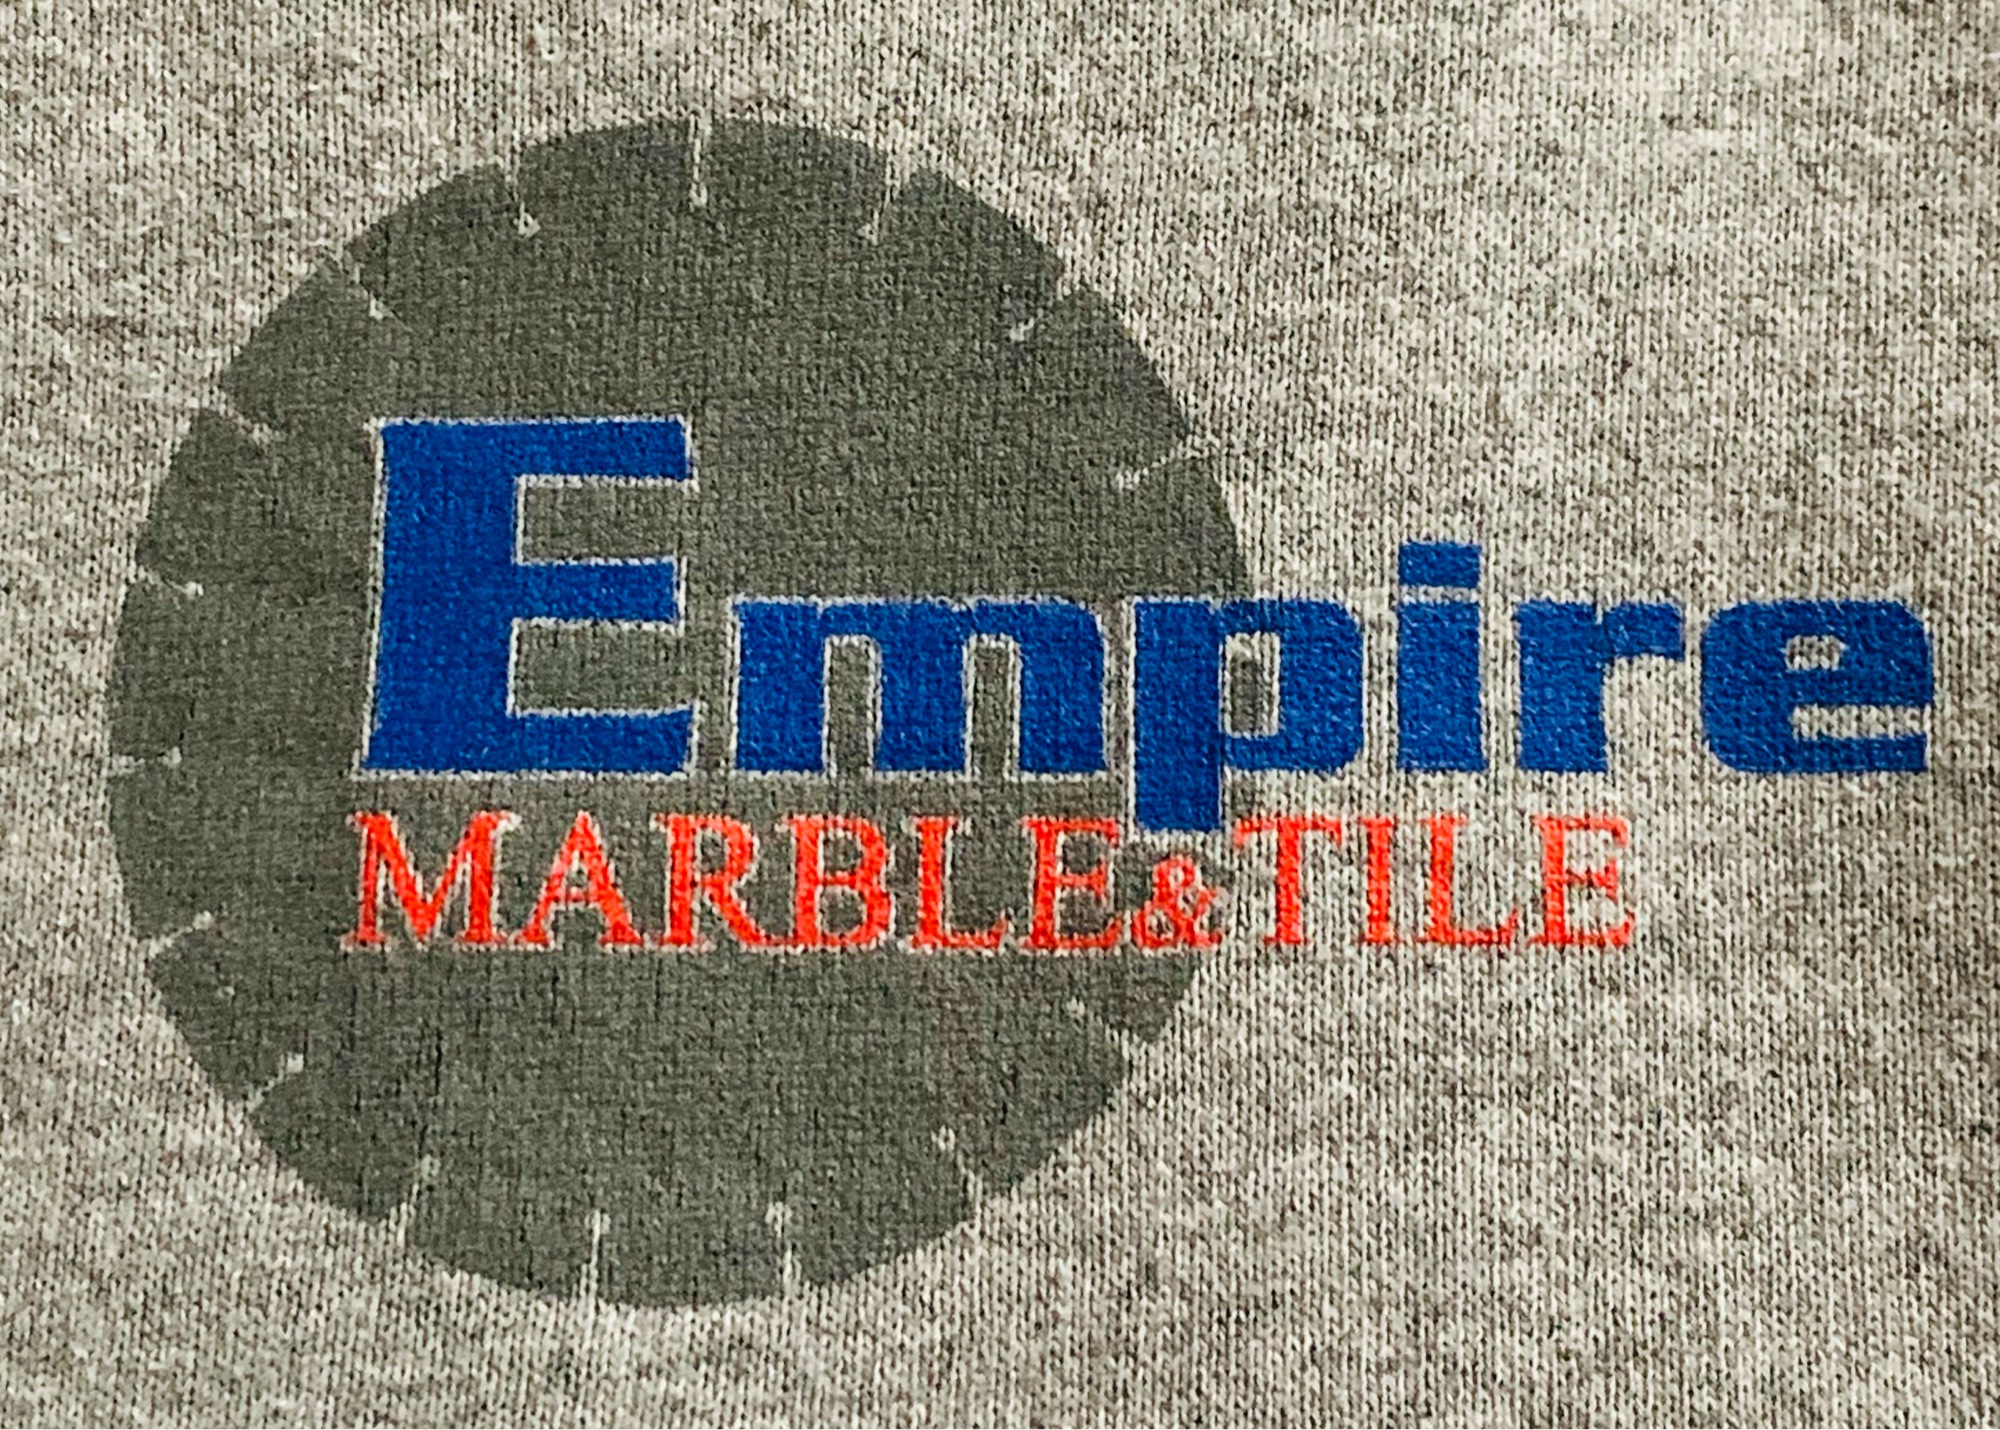 Empire Marble & Tile, Inc. Logo